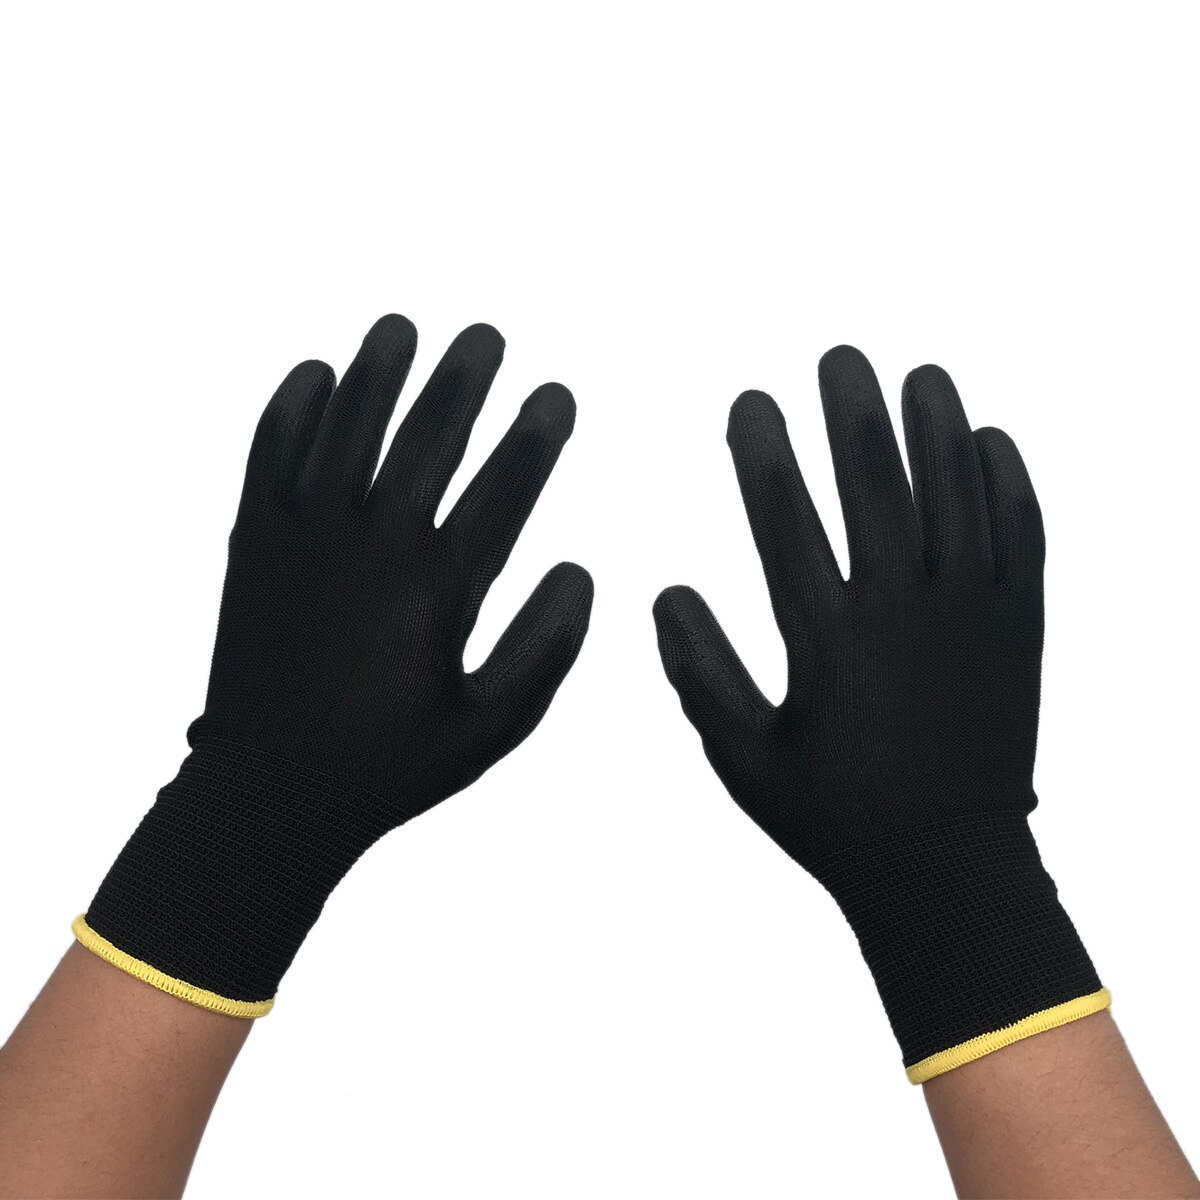 Nylon Werkhandschoenen Met Pu Leather Coated Grip Op Palm En Vingers Voor Elektronische Industrie, Workshop